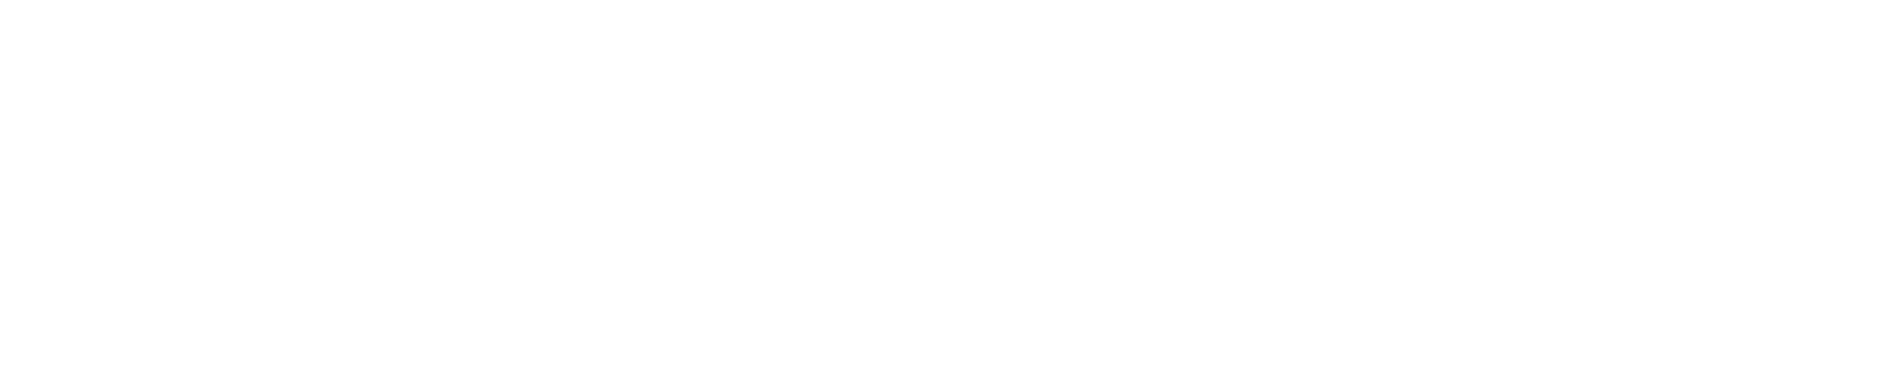 concentric-design.com